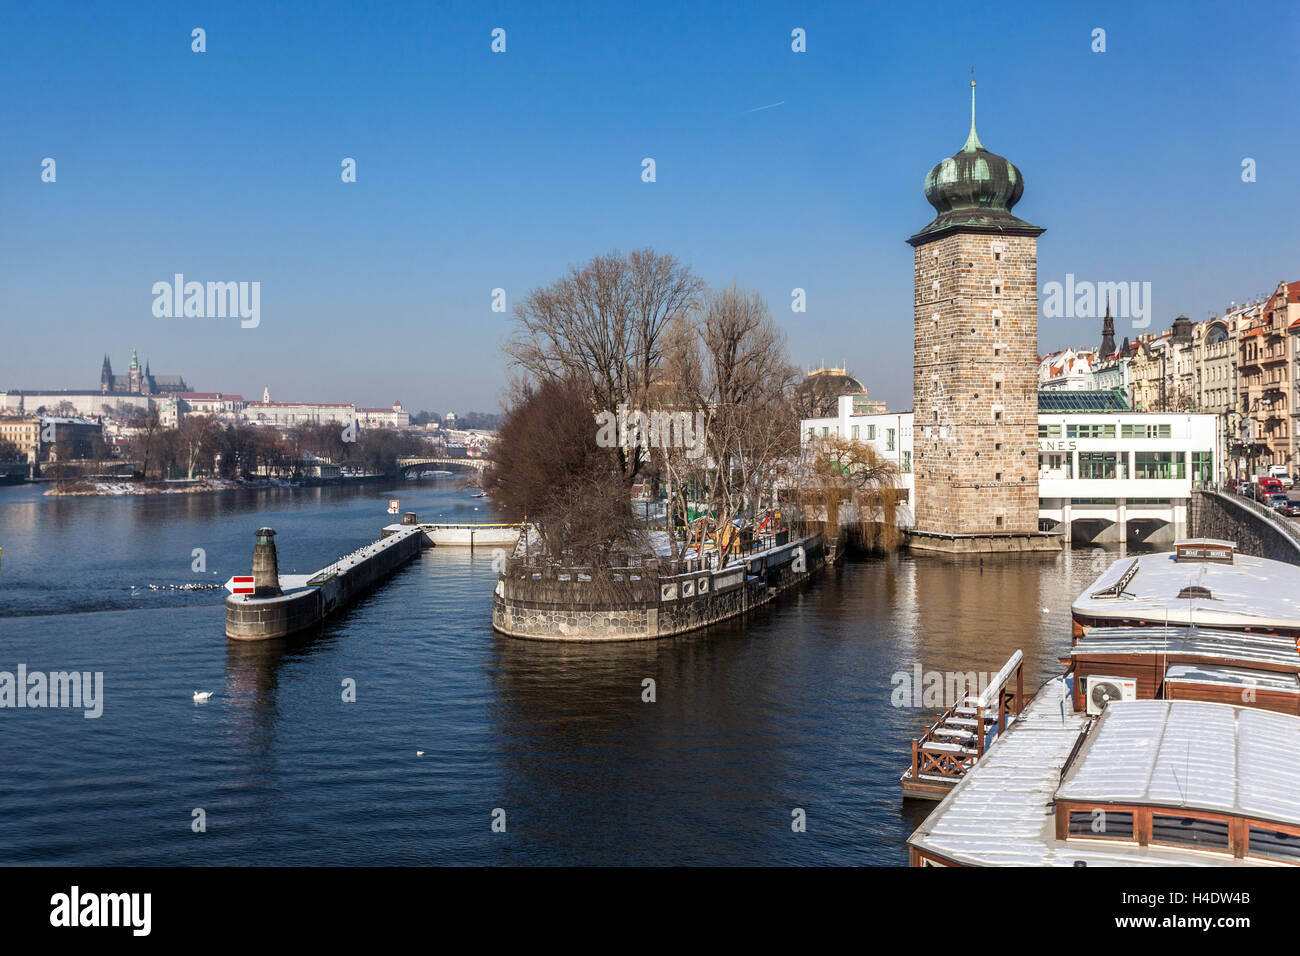 Gotischer Wasserturm, Manes, Moldau-Ufer. Prag, Tschechische Republik Prager Burg Fluss im Winter Stadtbild Stockfoto